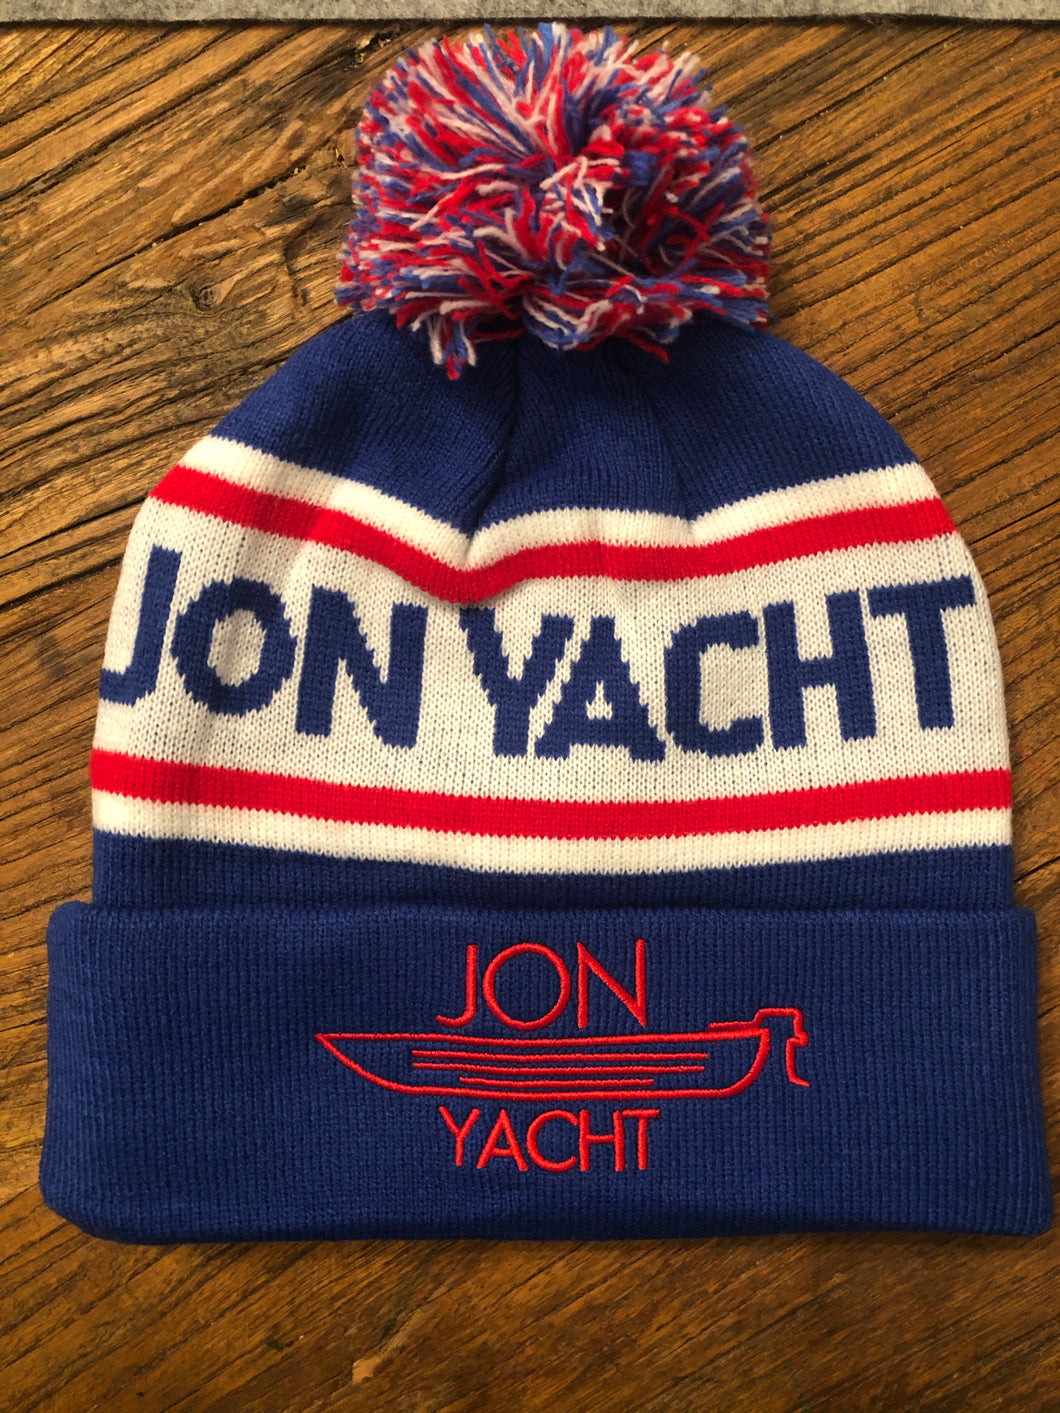 Jon Yacht Pom Pom beanie